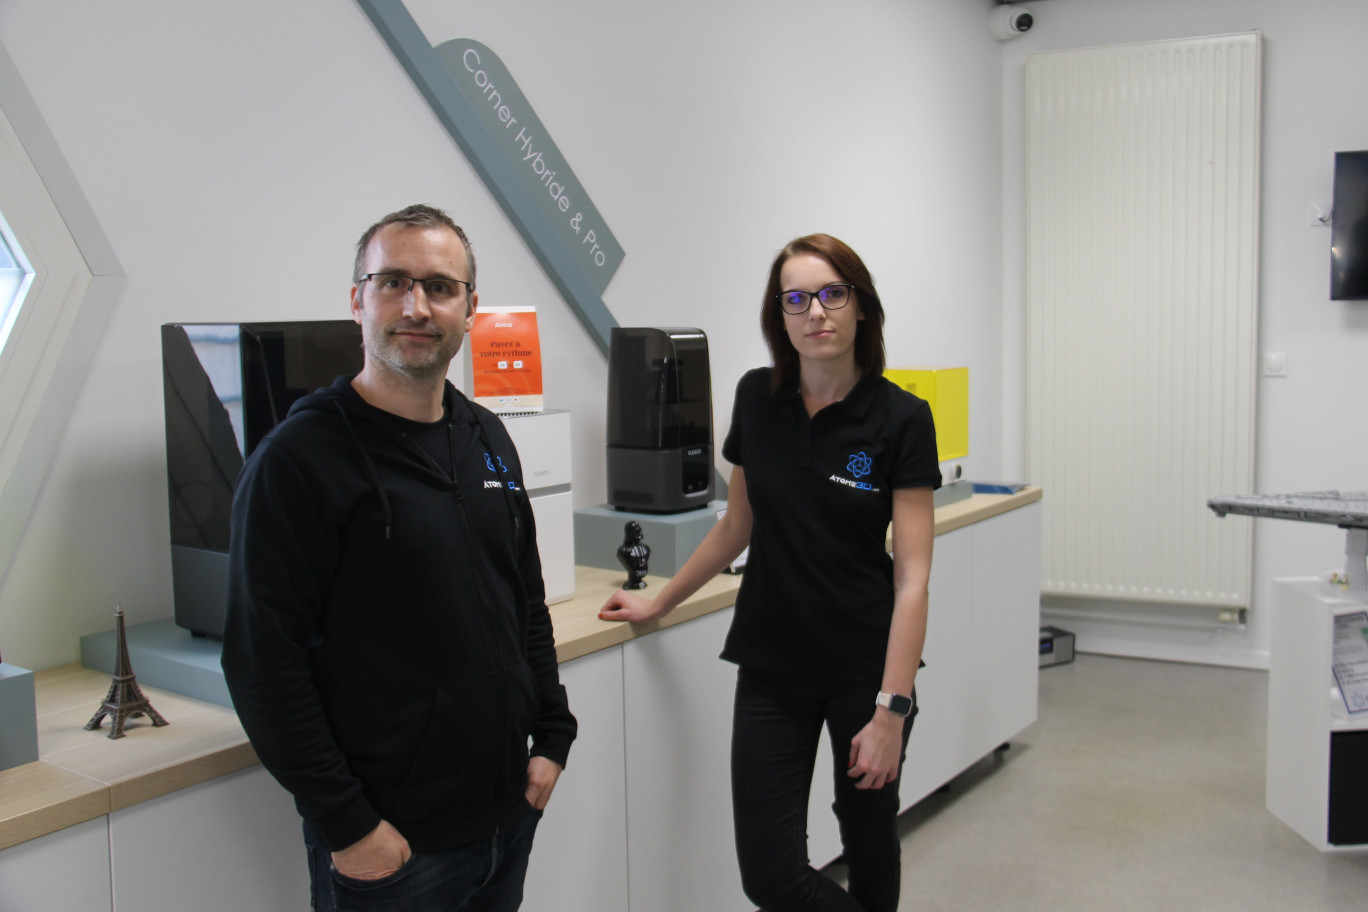  David Marchal et  Élodie Briougne, franchisés Atome 3D à Nancy, entendent démocratiser l’utilisation de l’impression 3D, notamment chez les professionnels.